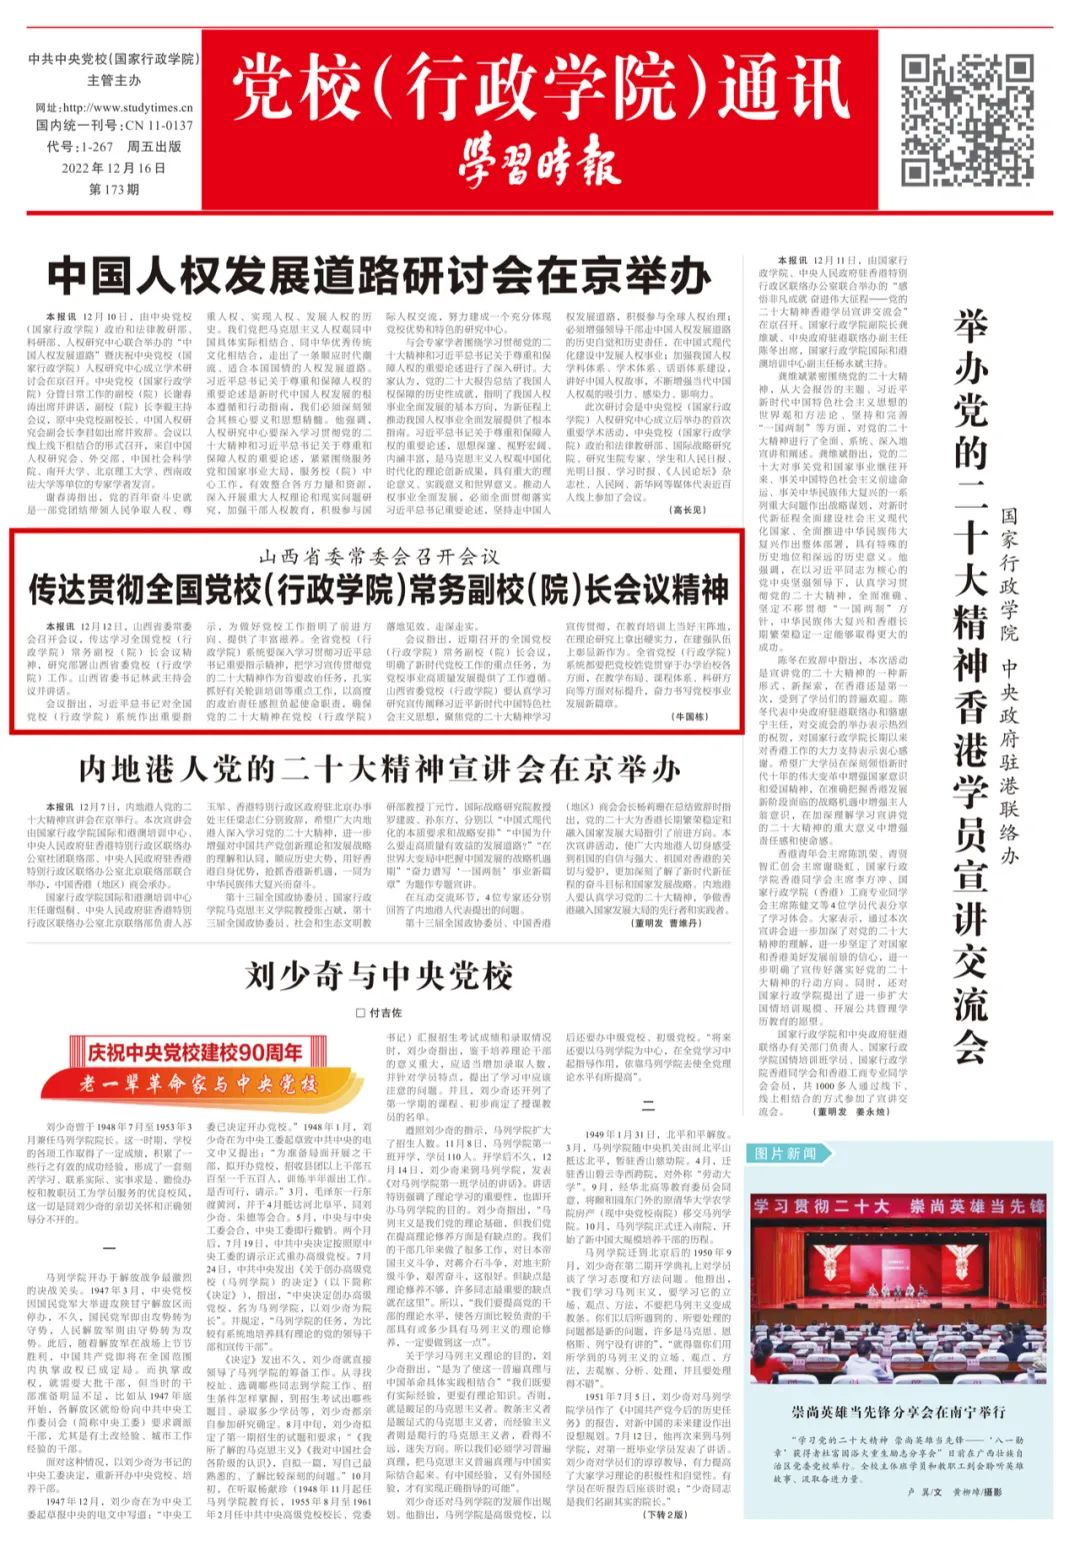 《学习时报》12月16日集中报道山西省委党校两条工作消息